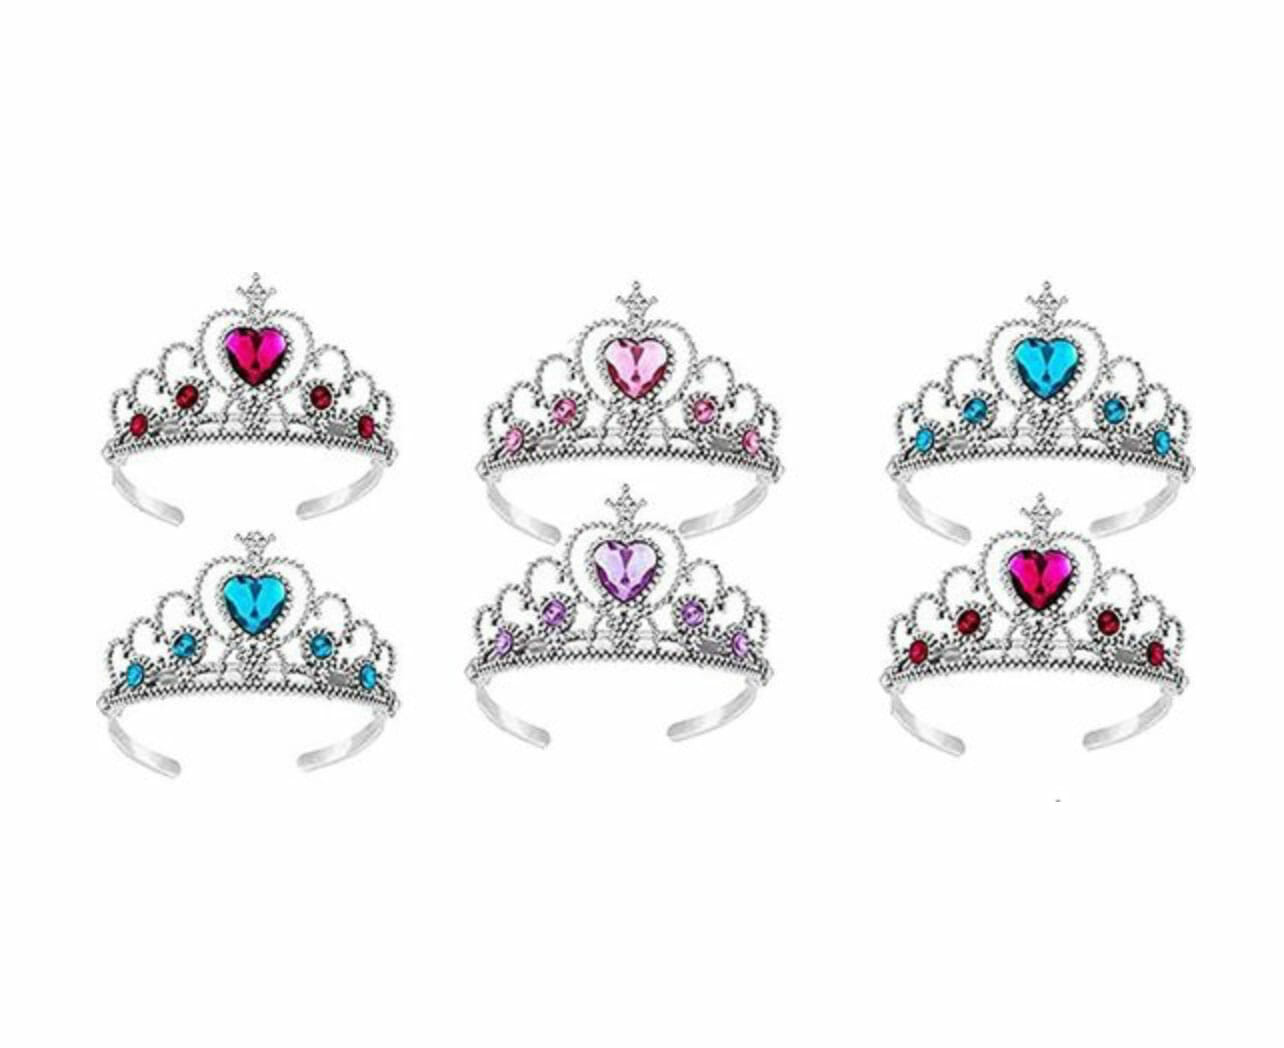 Astrolabium huilen Moskee Prinsessen Tiara - Kroon - 6-pack - Verkleedkleren Meisje - Paars, Blauw,  Roze - Het Betere Merk